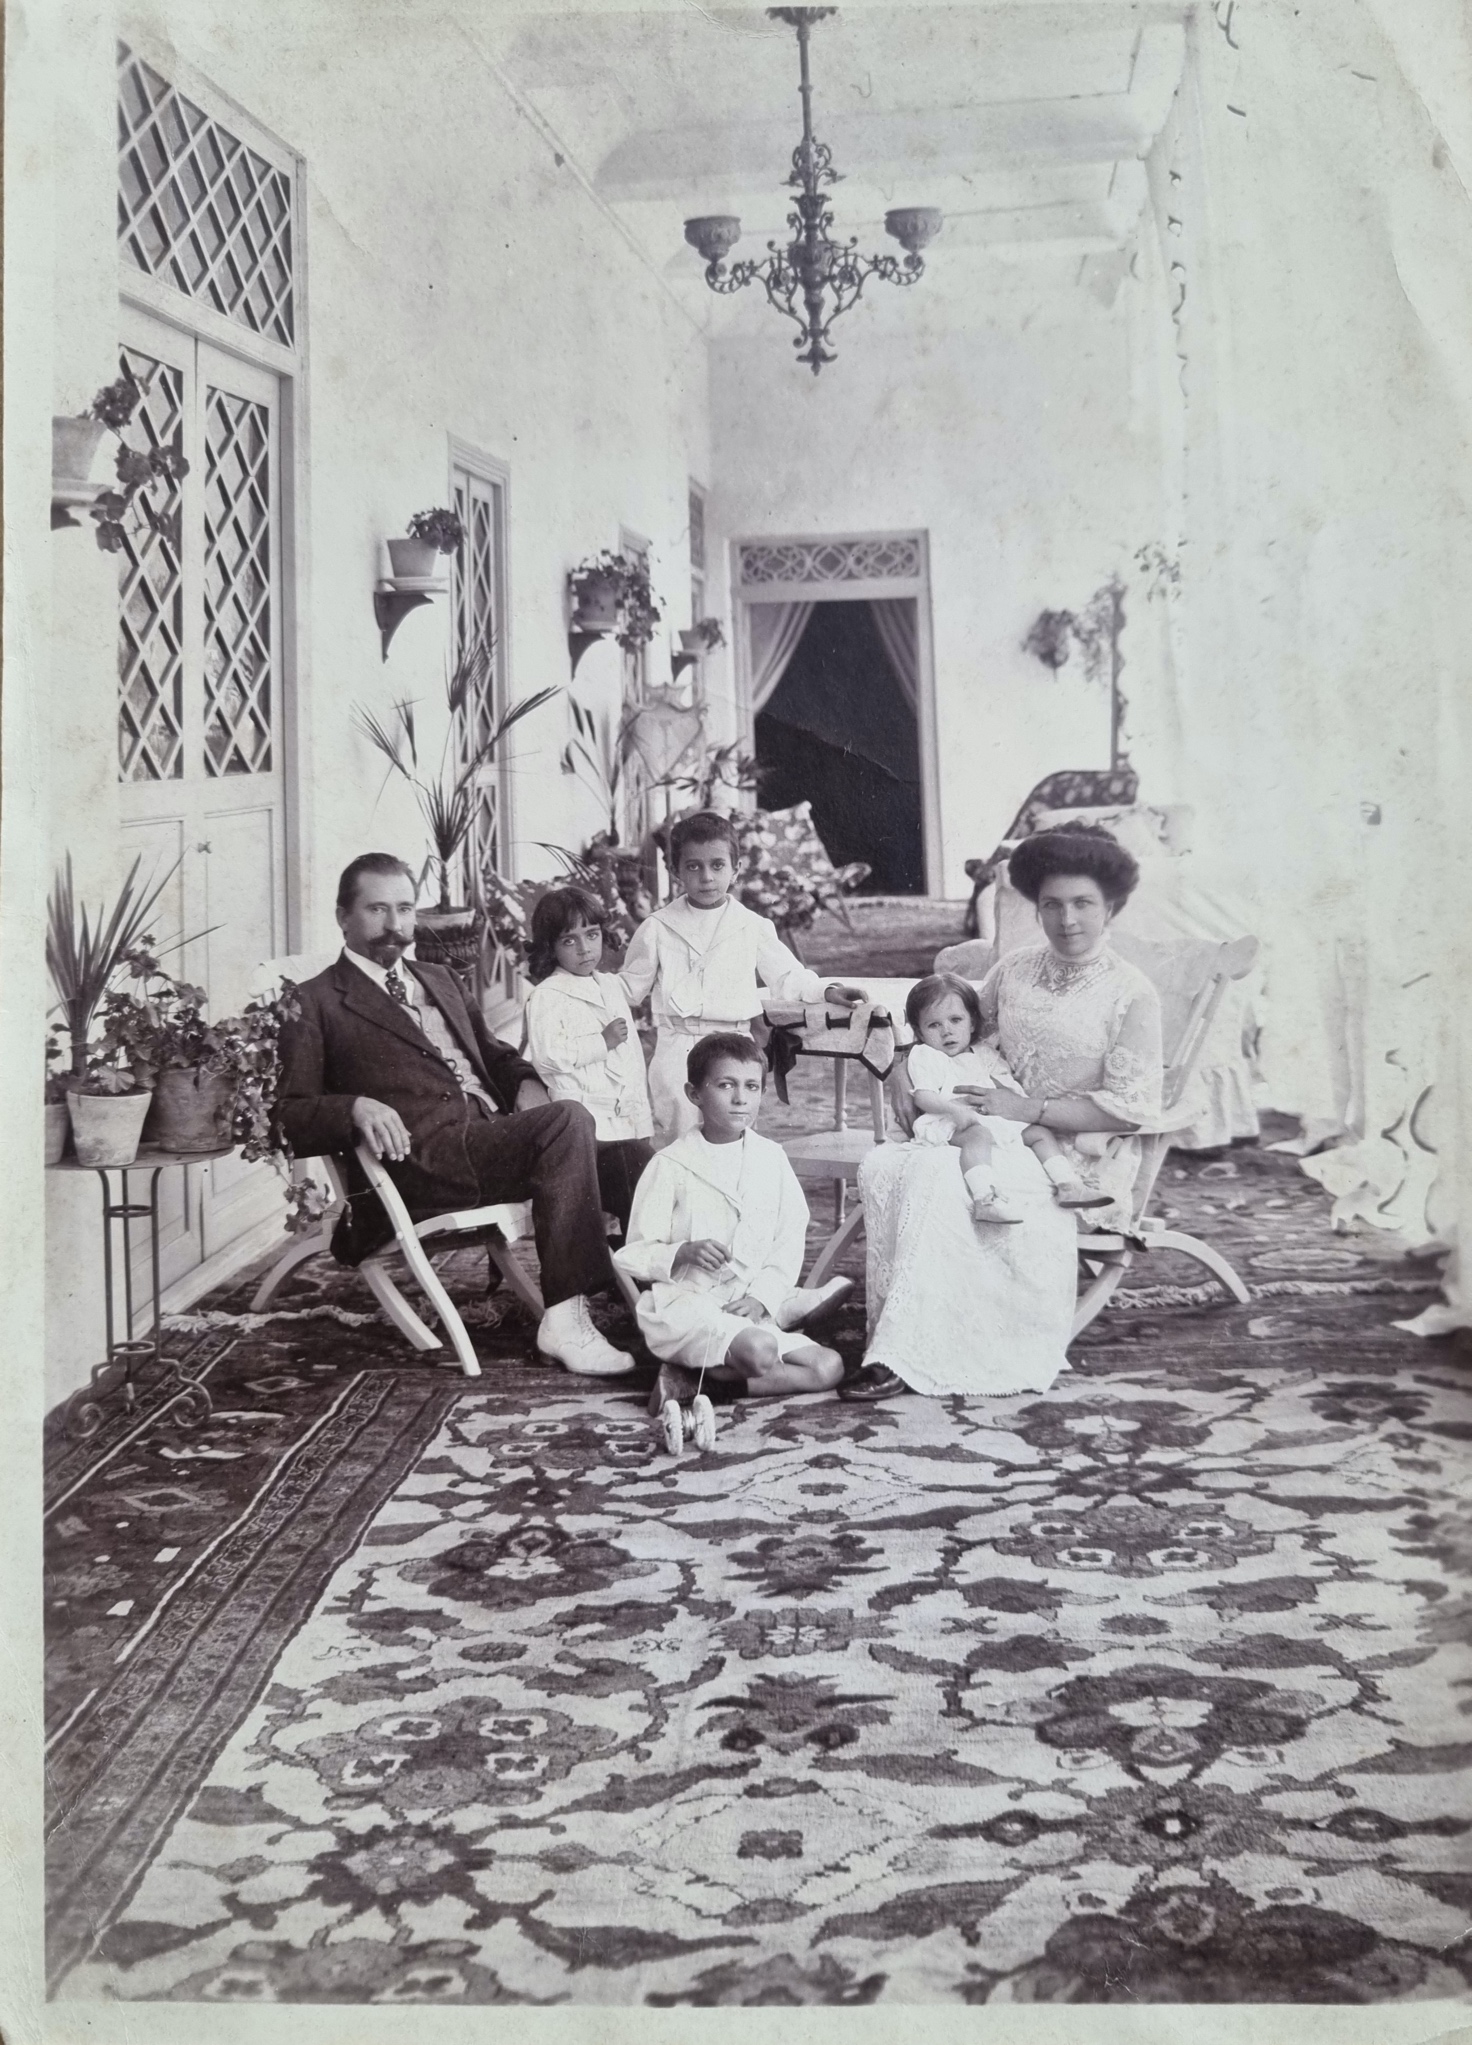 Joseph Mornard entouré de sa famille, probablement à Téhéran vers 1913 (coll. privée Nele Leloup)